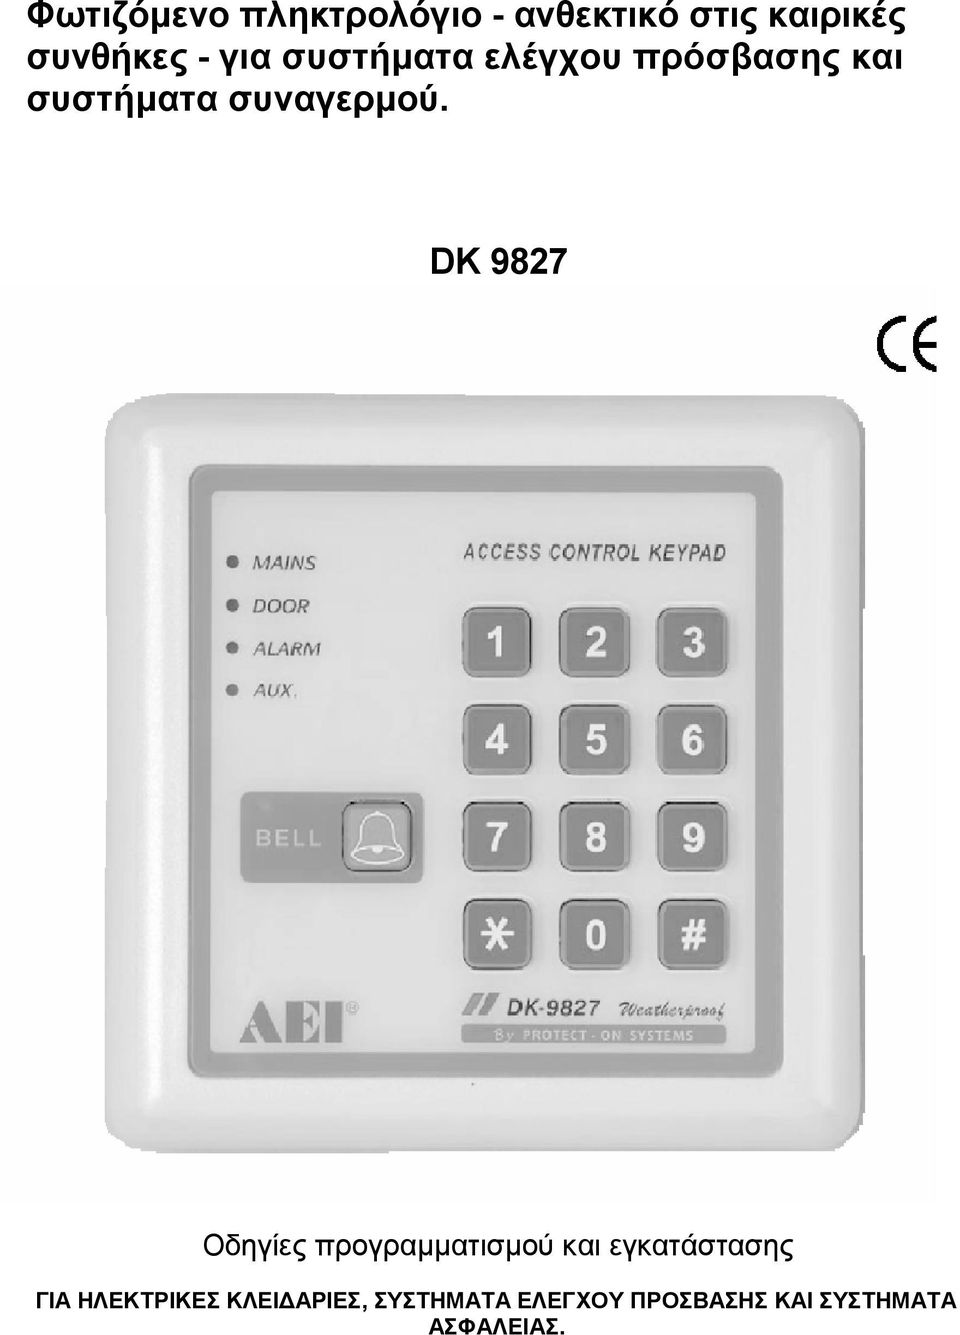 DK 9827 Οδηγίες προγραµµατισµού και εγκατάστασης ΓΙΑ